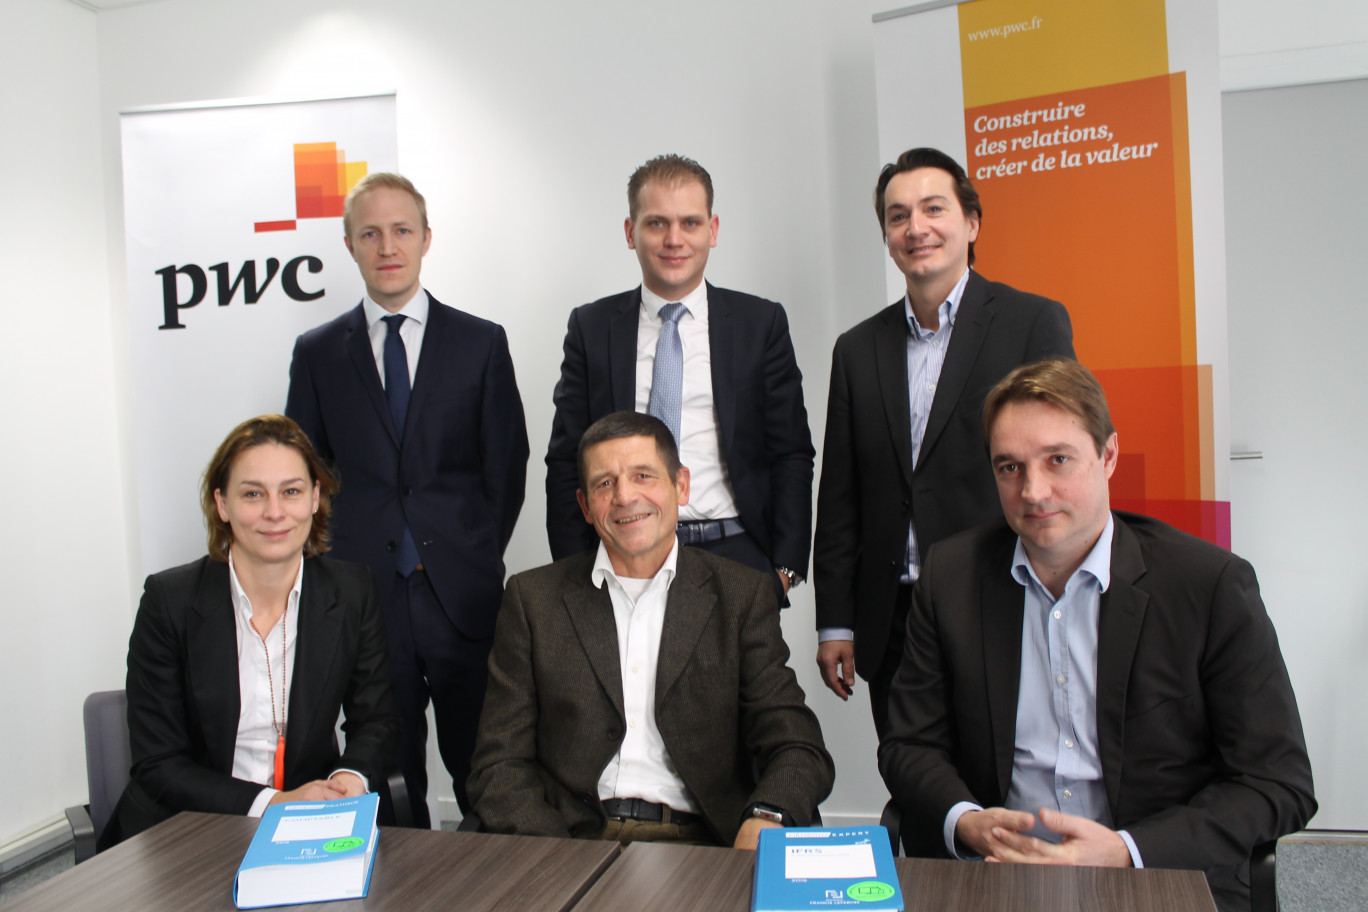 De gauche à droite, assis, Stéphanie Verzura, Philippe Aerts et Laurent Guiot ; debout, Etienne Durieux, Alexandre Decrand, et Guillaume Molmy. 